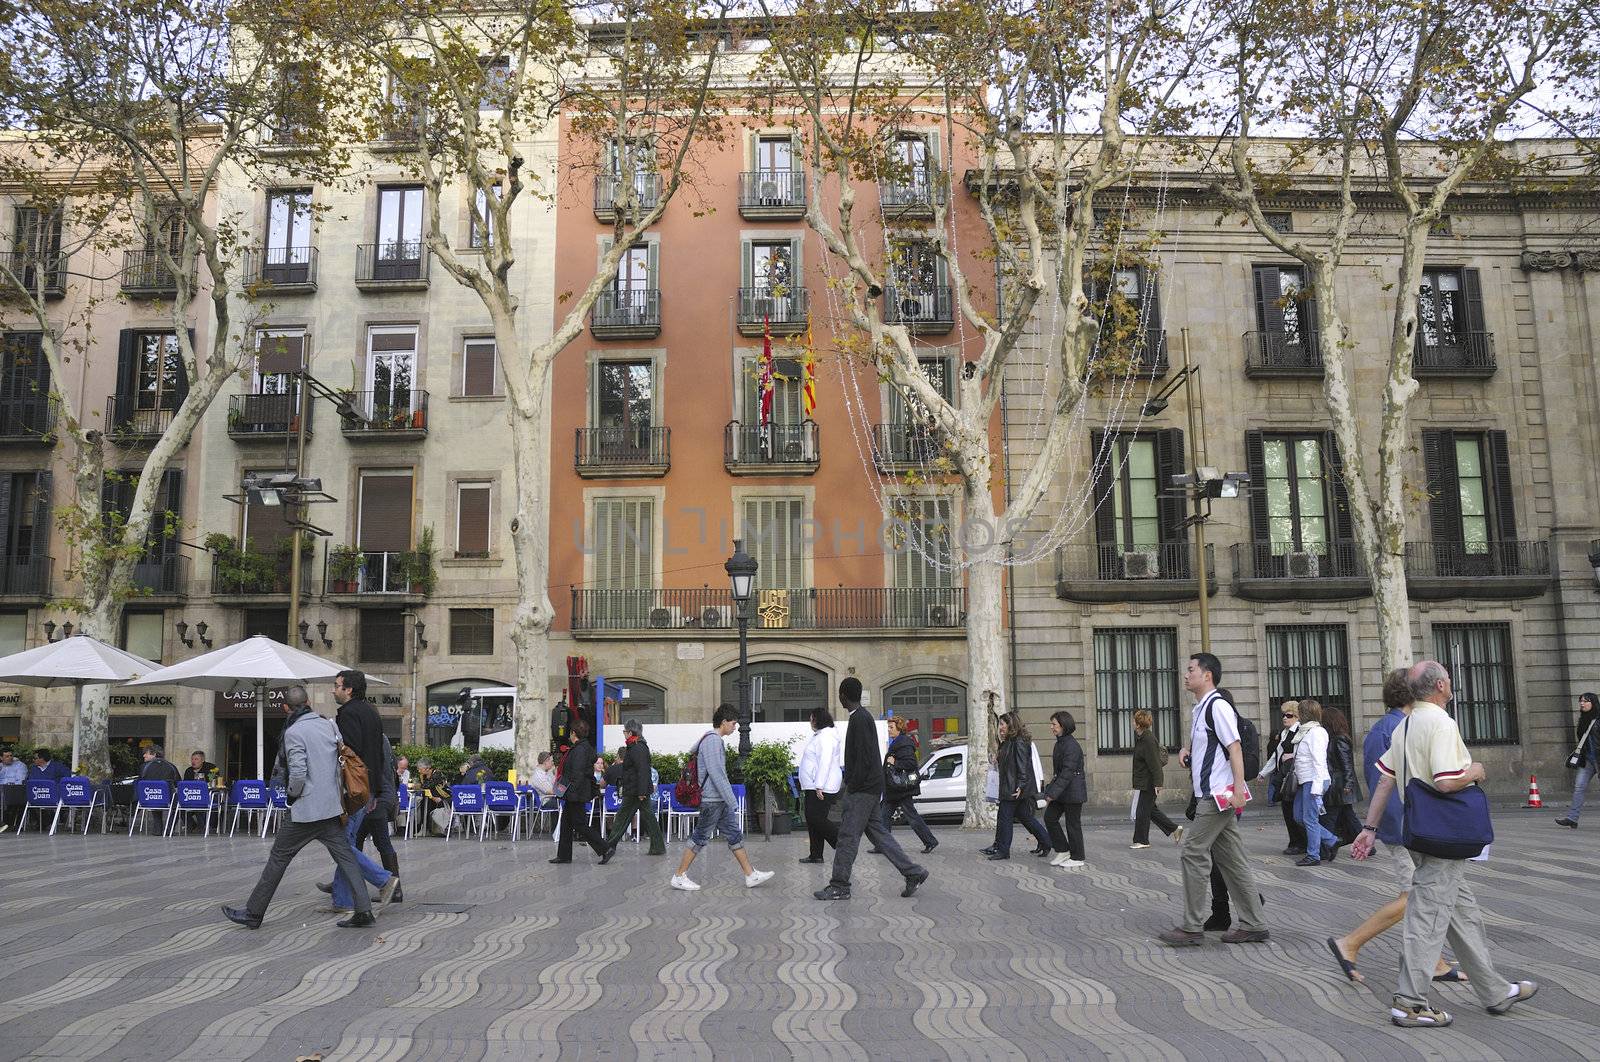 Barcelona, Spain - November 13, 2009 : people walk on wide pedestrian pathway of famous La Rambla street in Barcelona.